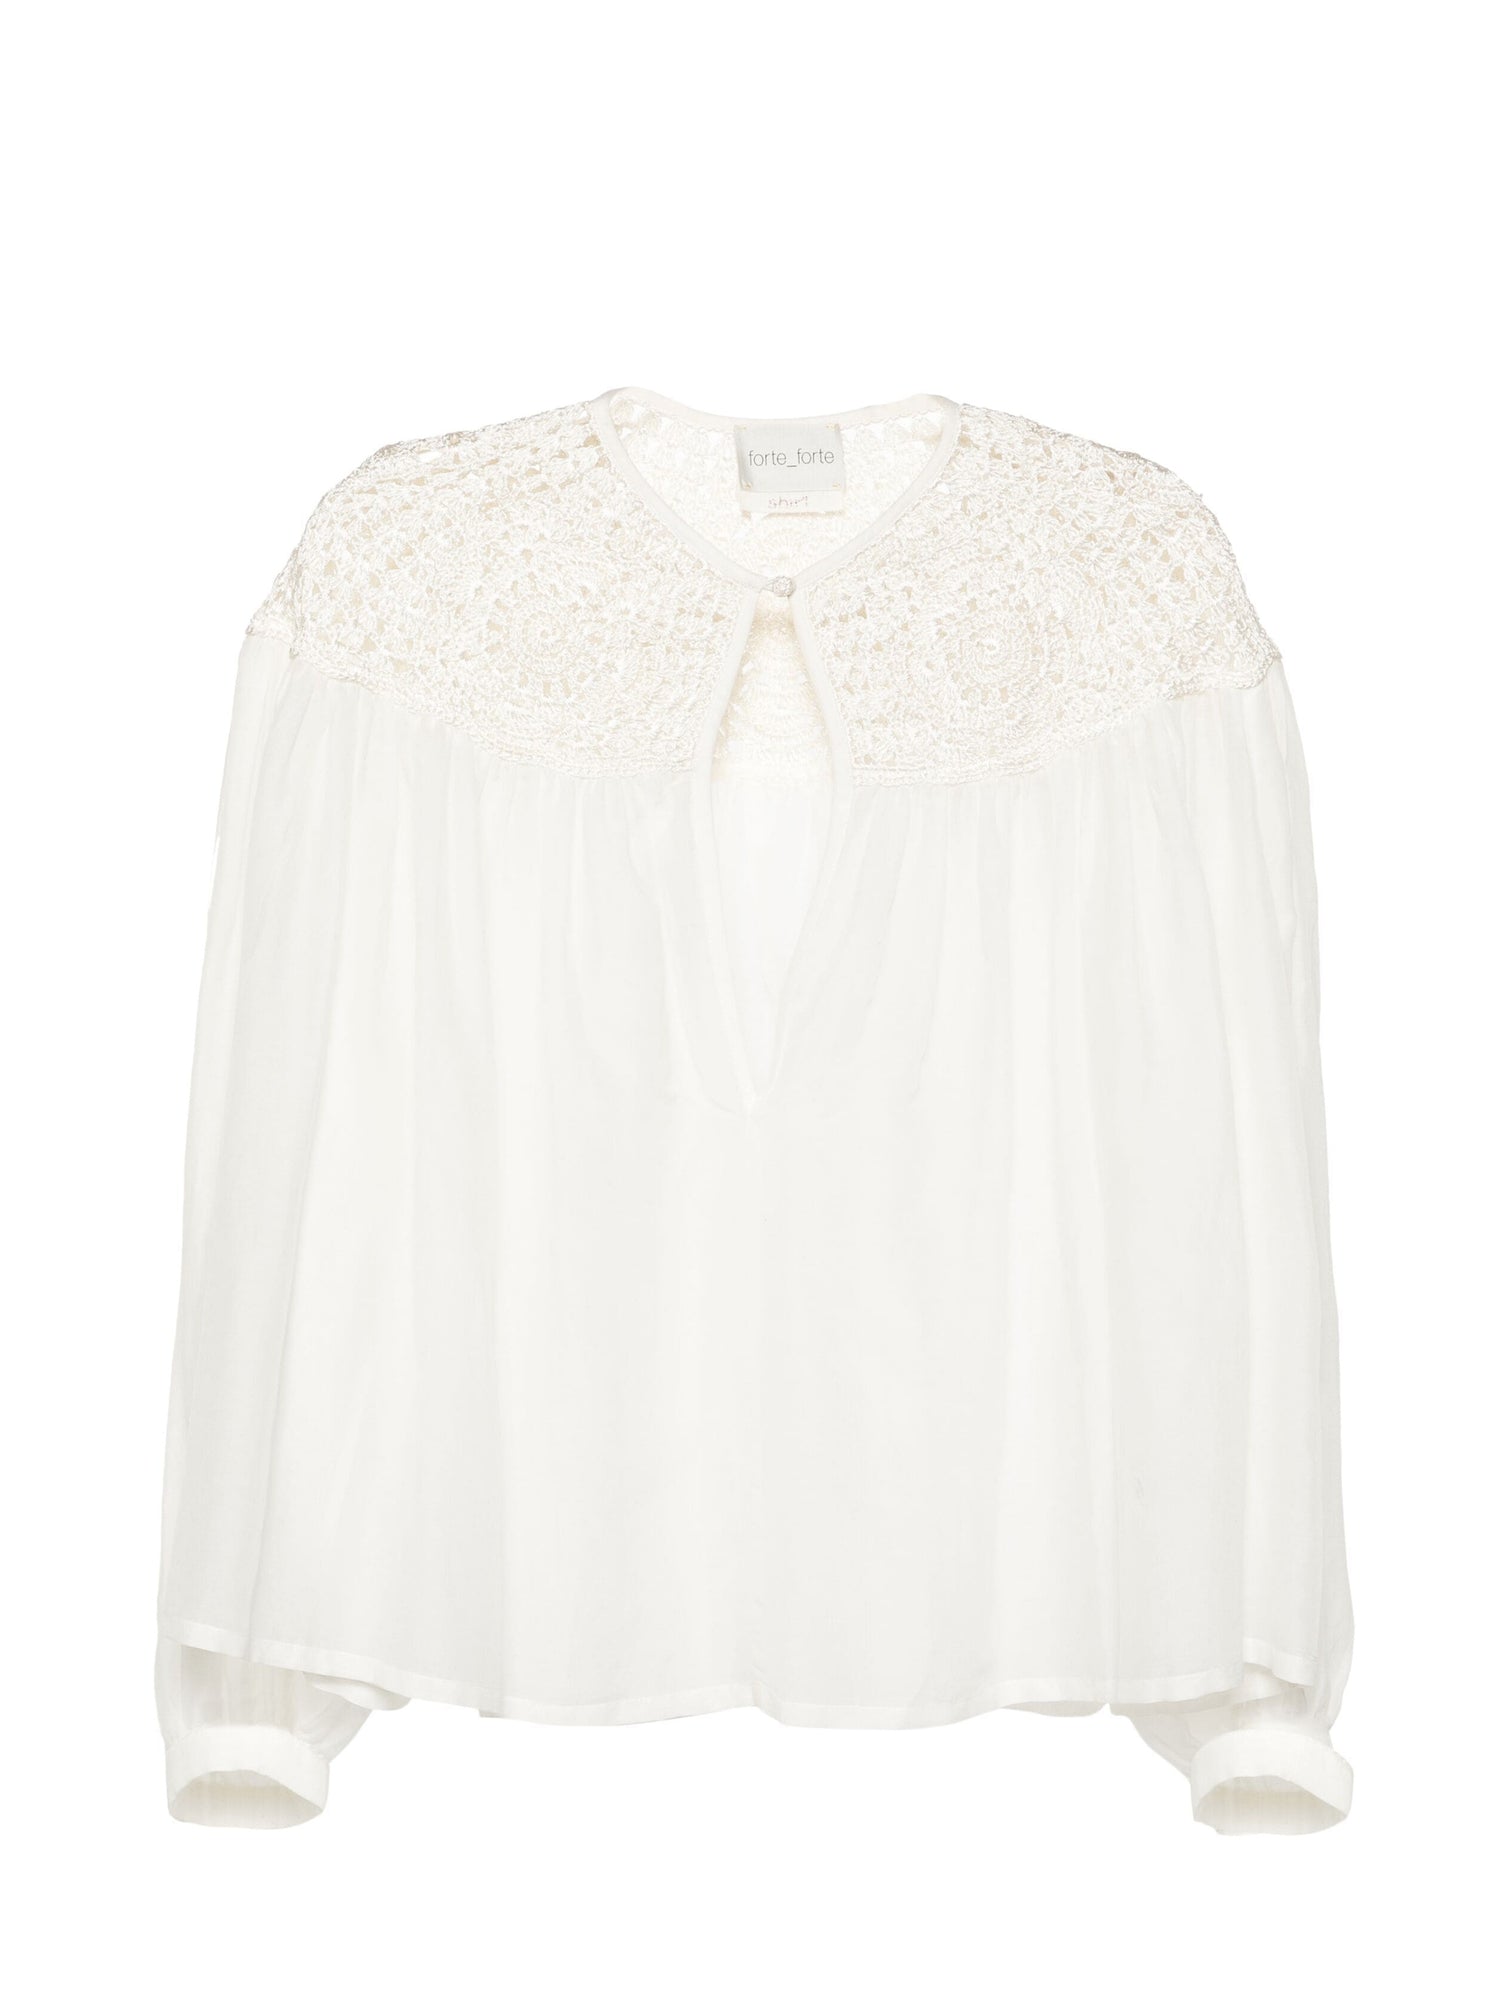 Cotton silk voile bohemian shirt crochet details, avorio